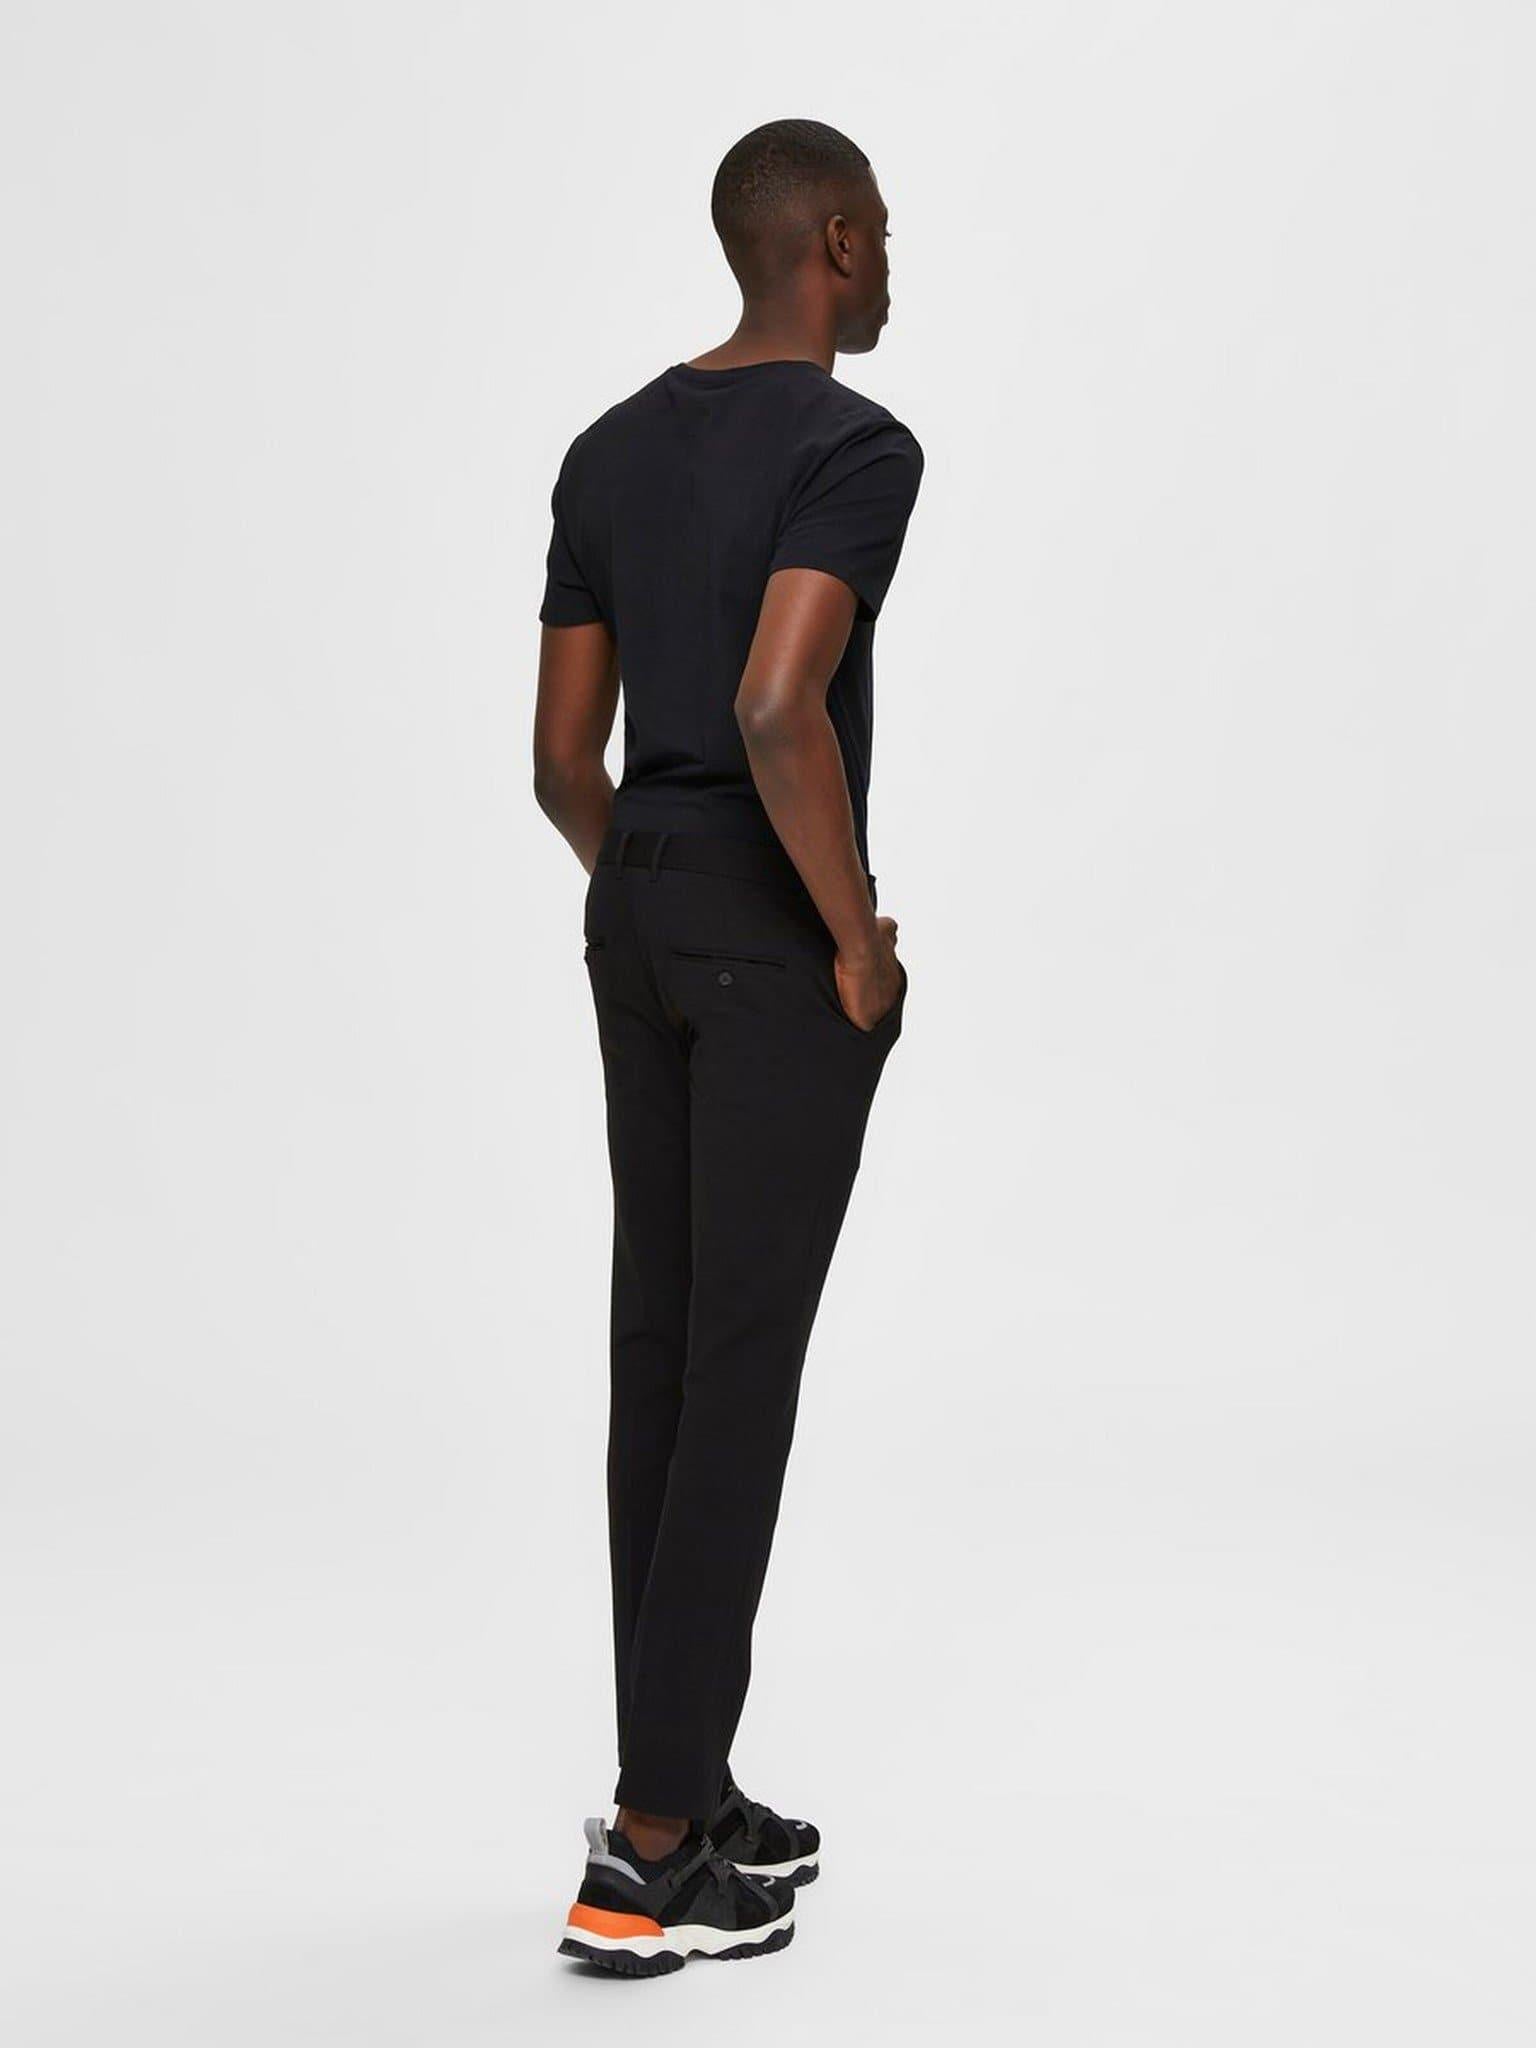 Laflamme- Pantalon flex fit noir - Selected